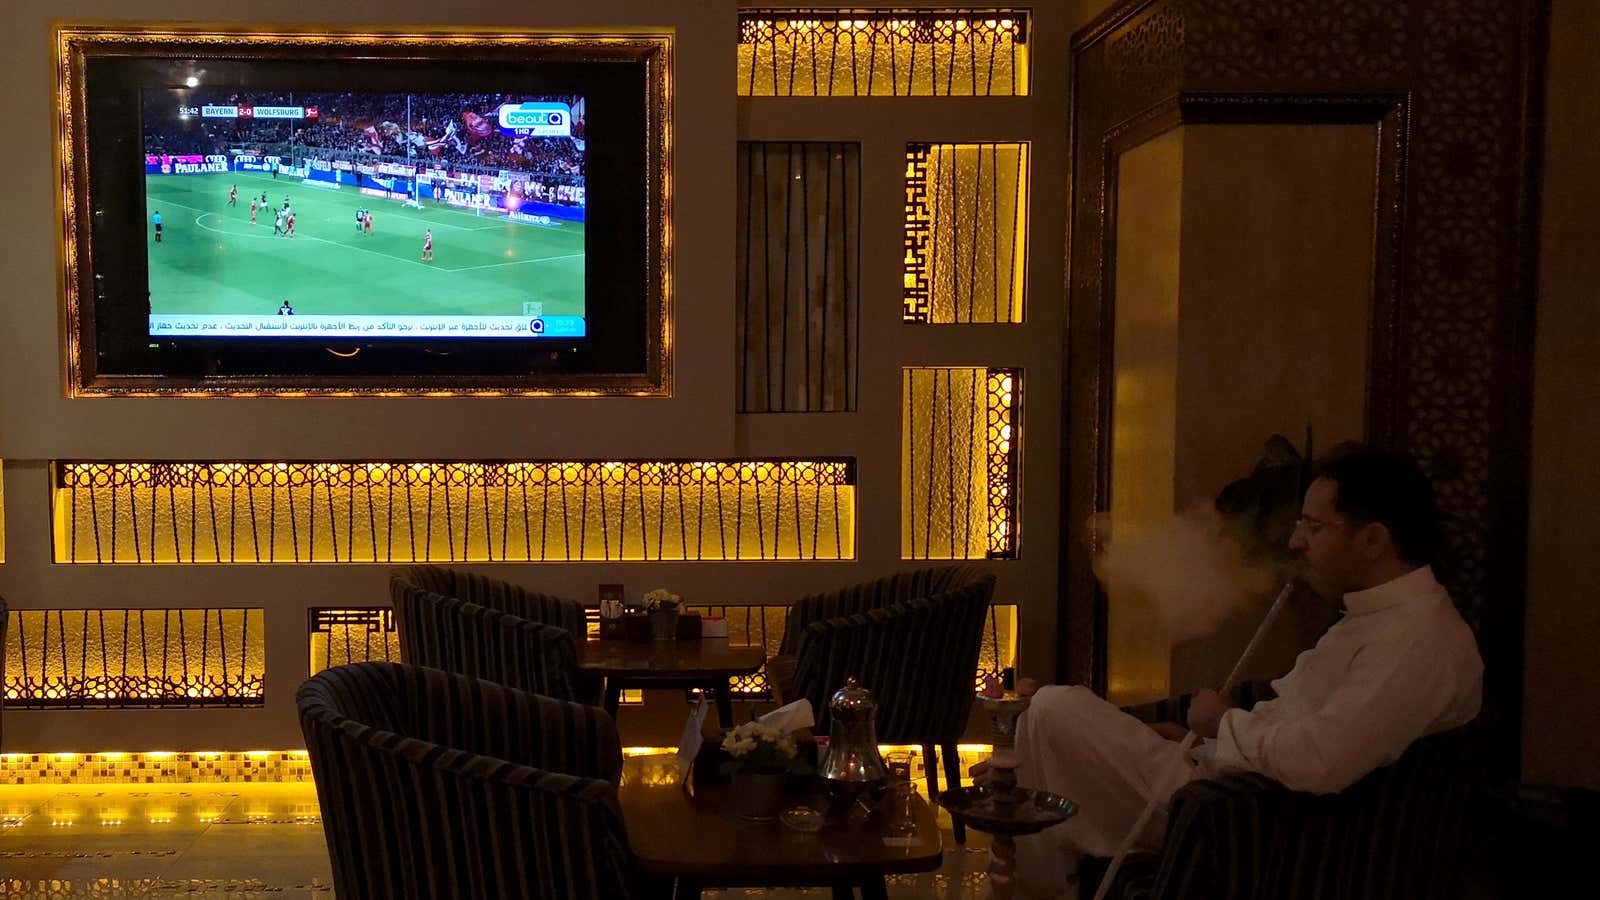 A Saudi man watches a pirated broadcast in a cafe in Khobar, Saudi Arabia.